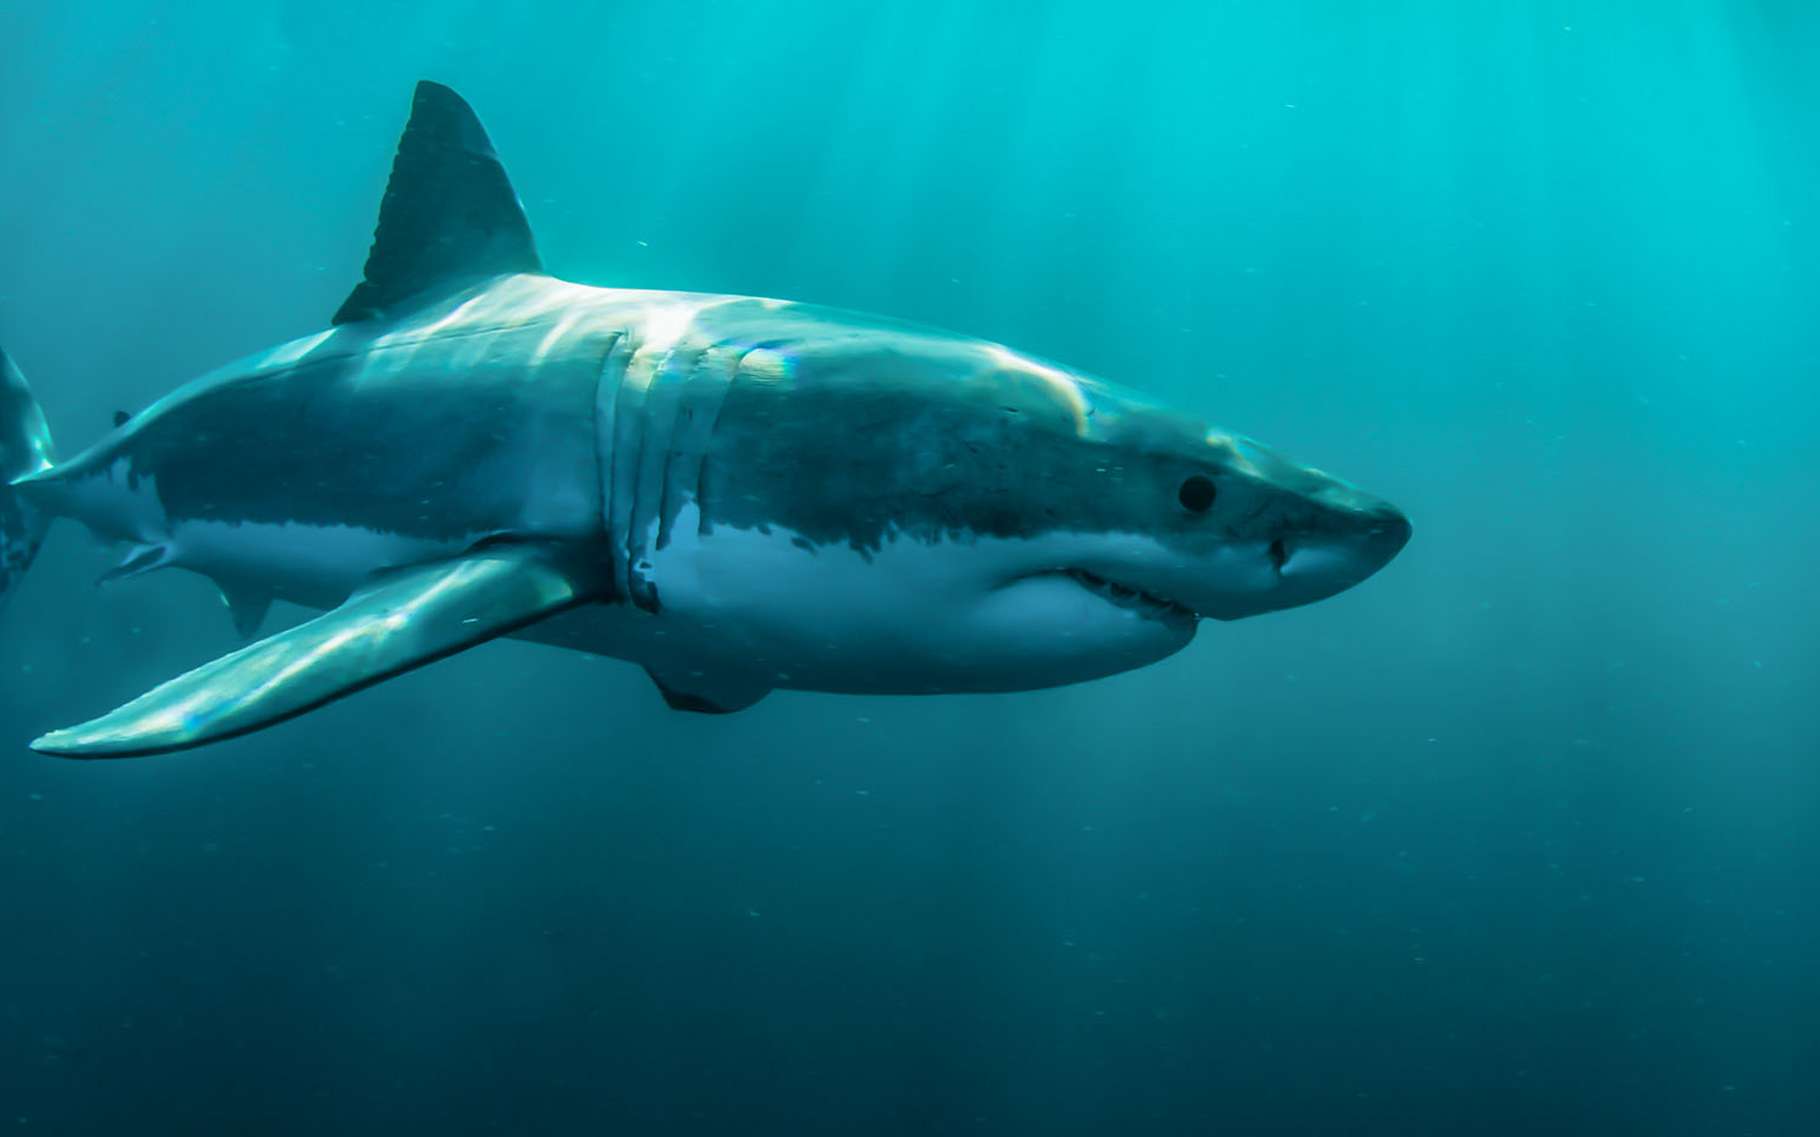 Le Grand requin blanc évolue dans des eaux peu profondes. Il a le ventre blanc, d'où son nom. © Steven Surina, tous droits réservés